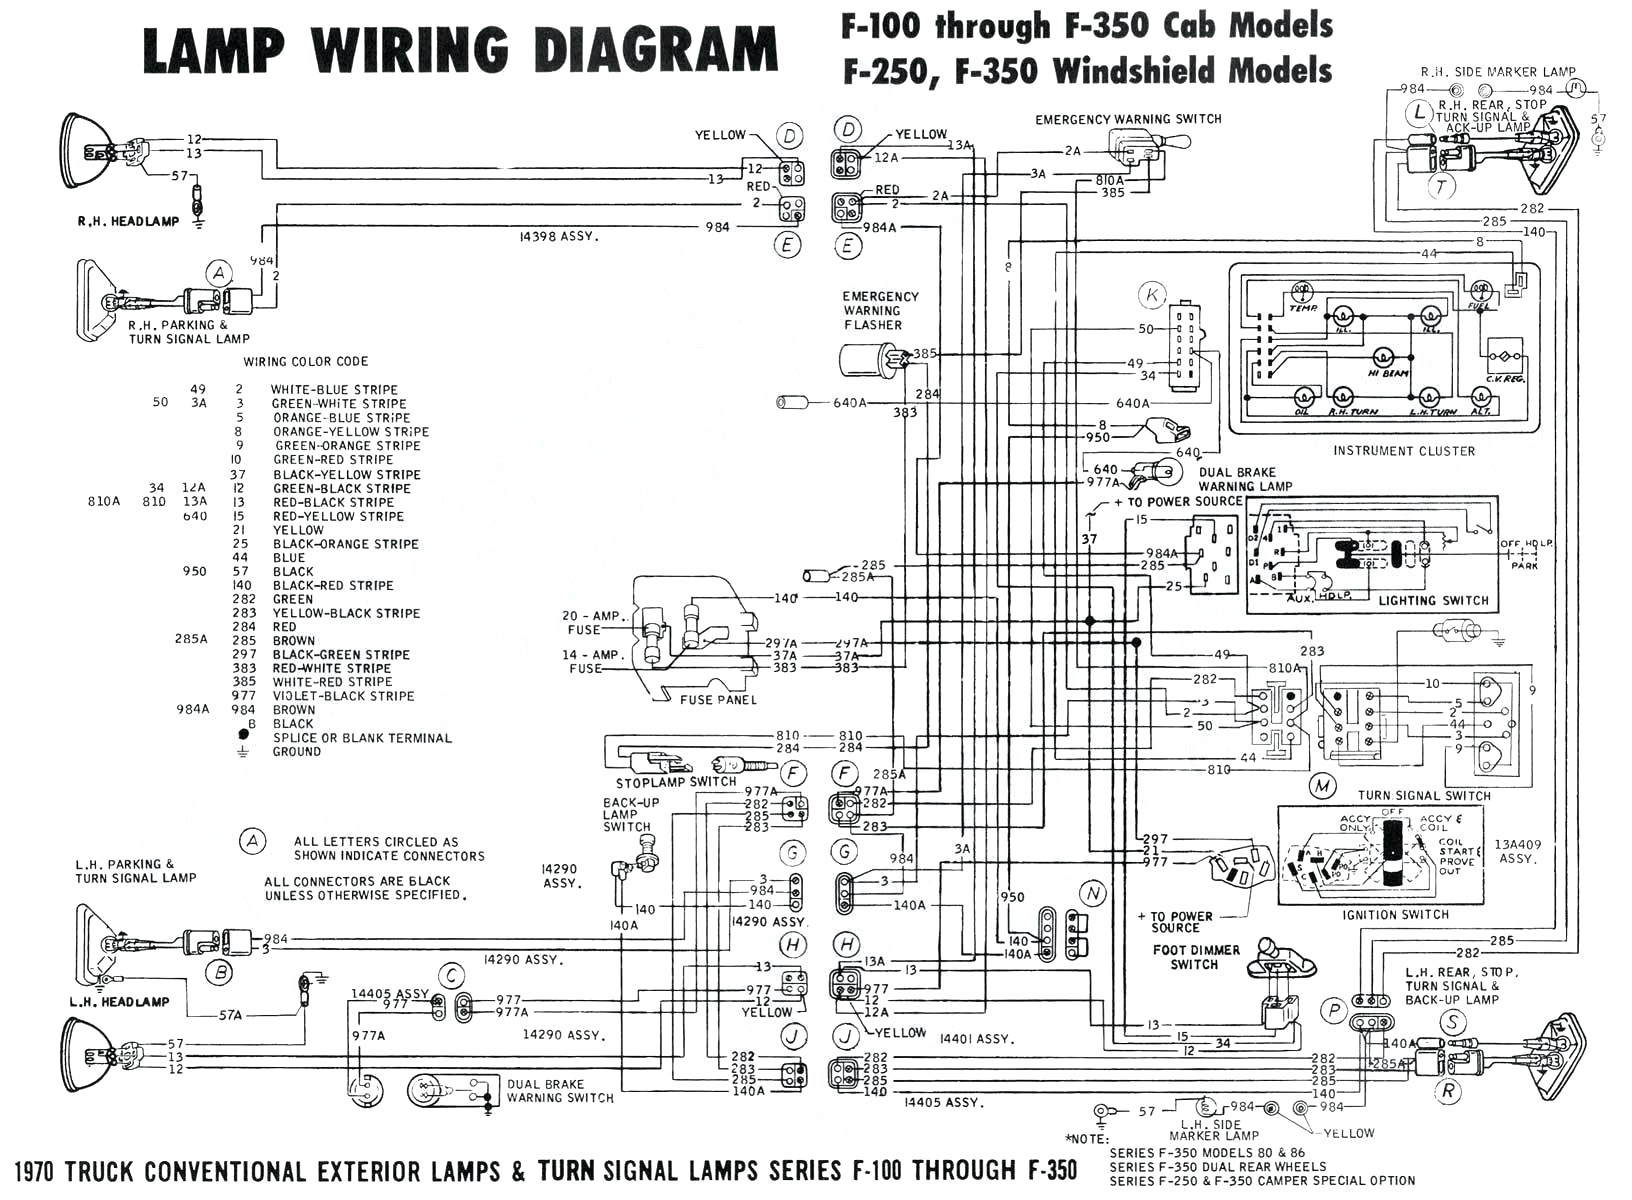 mf 282 wiring diagram wiring diagram view mf 282 wiring diagram